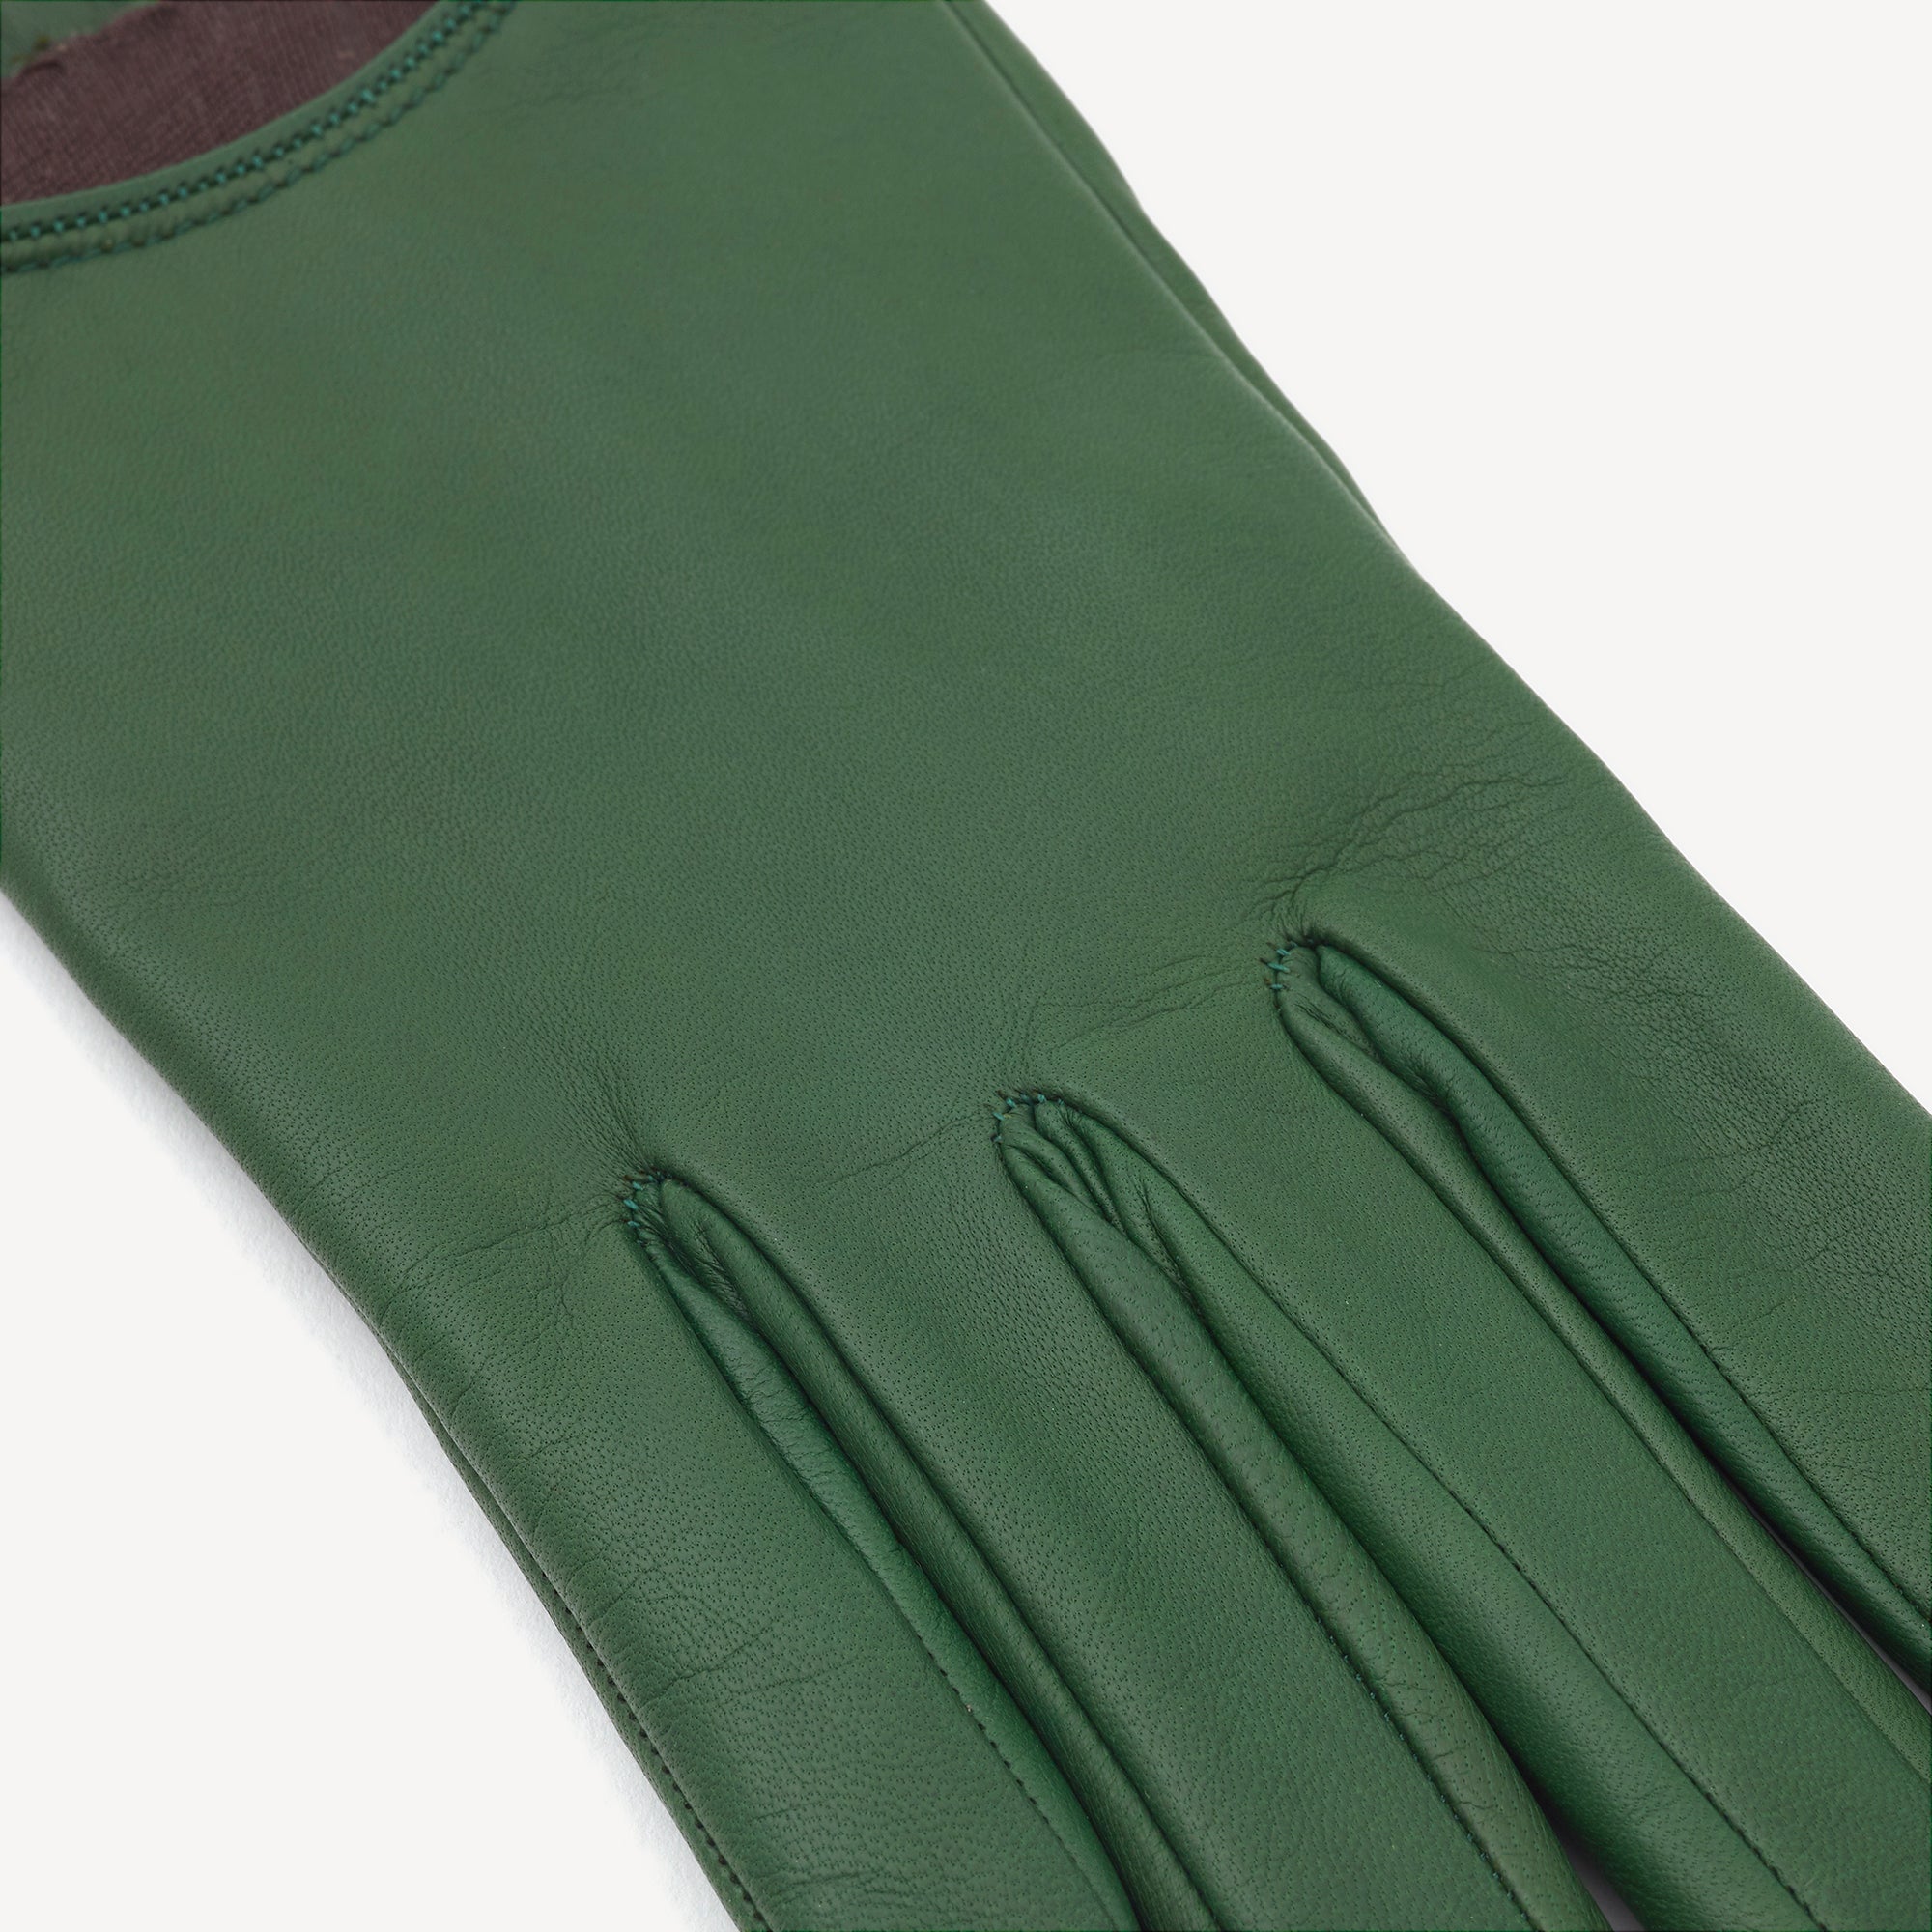 Vert - taille L, Gants de jardinage Femme cuir, antiadhésif manche longue,  gants de jardinage femme élégants